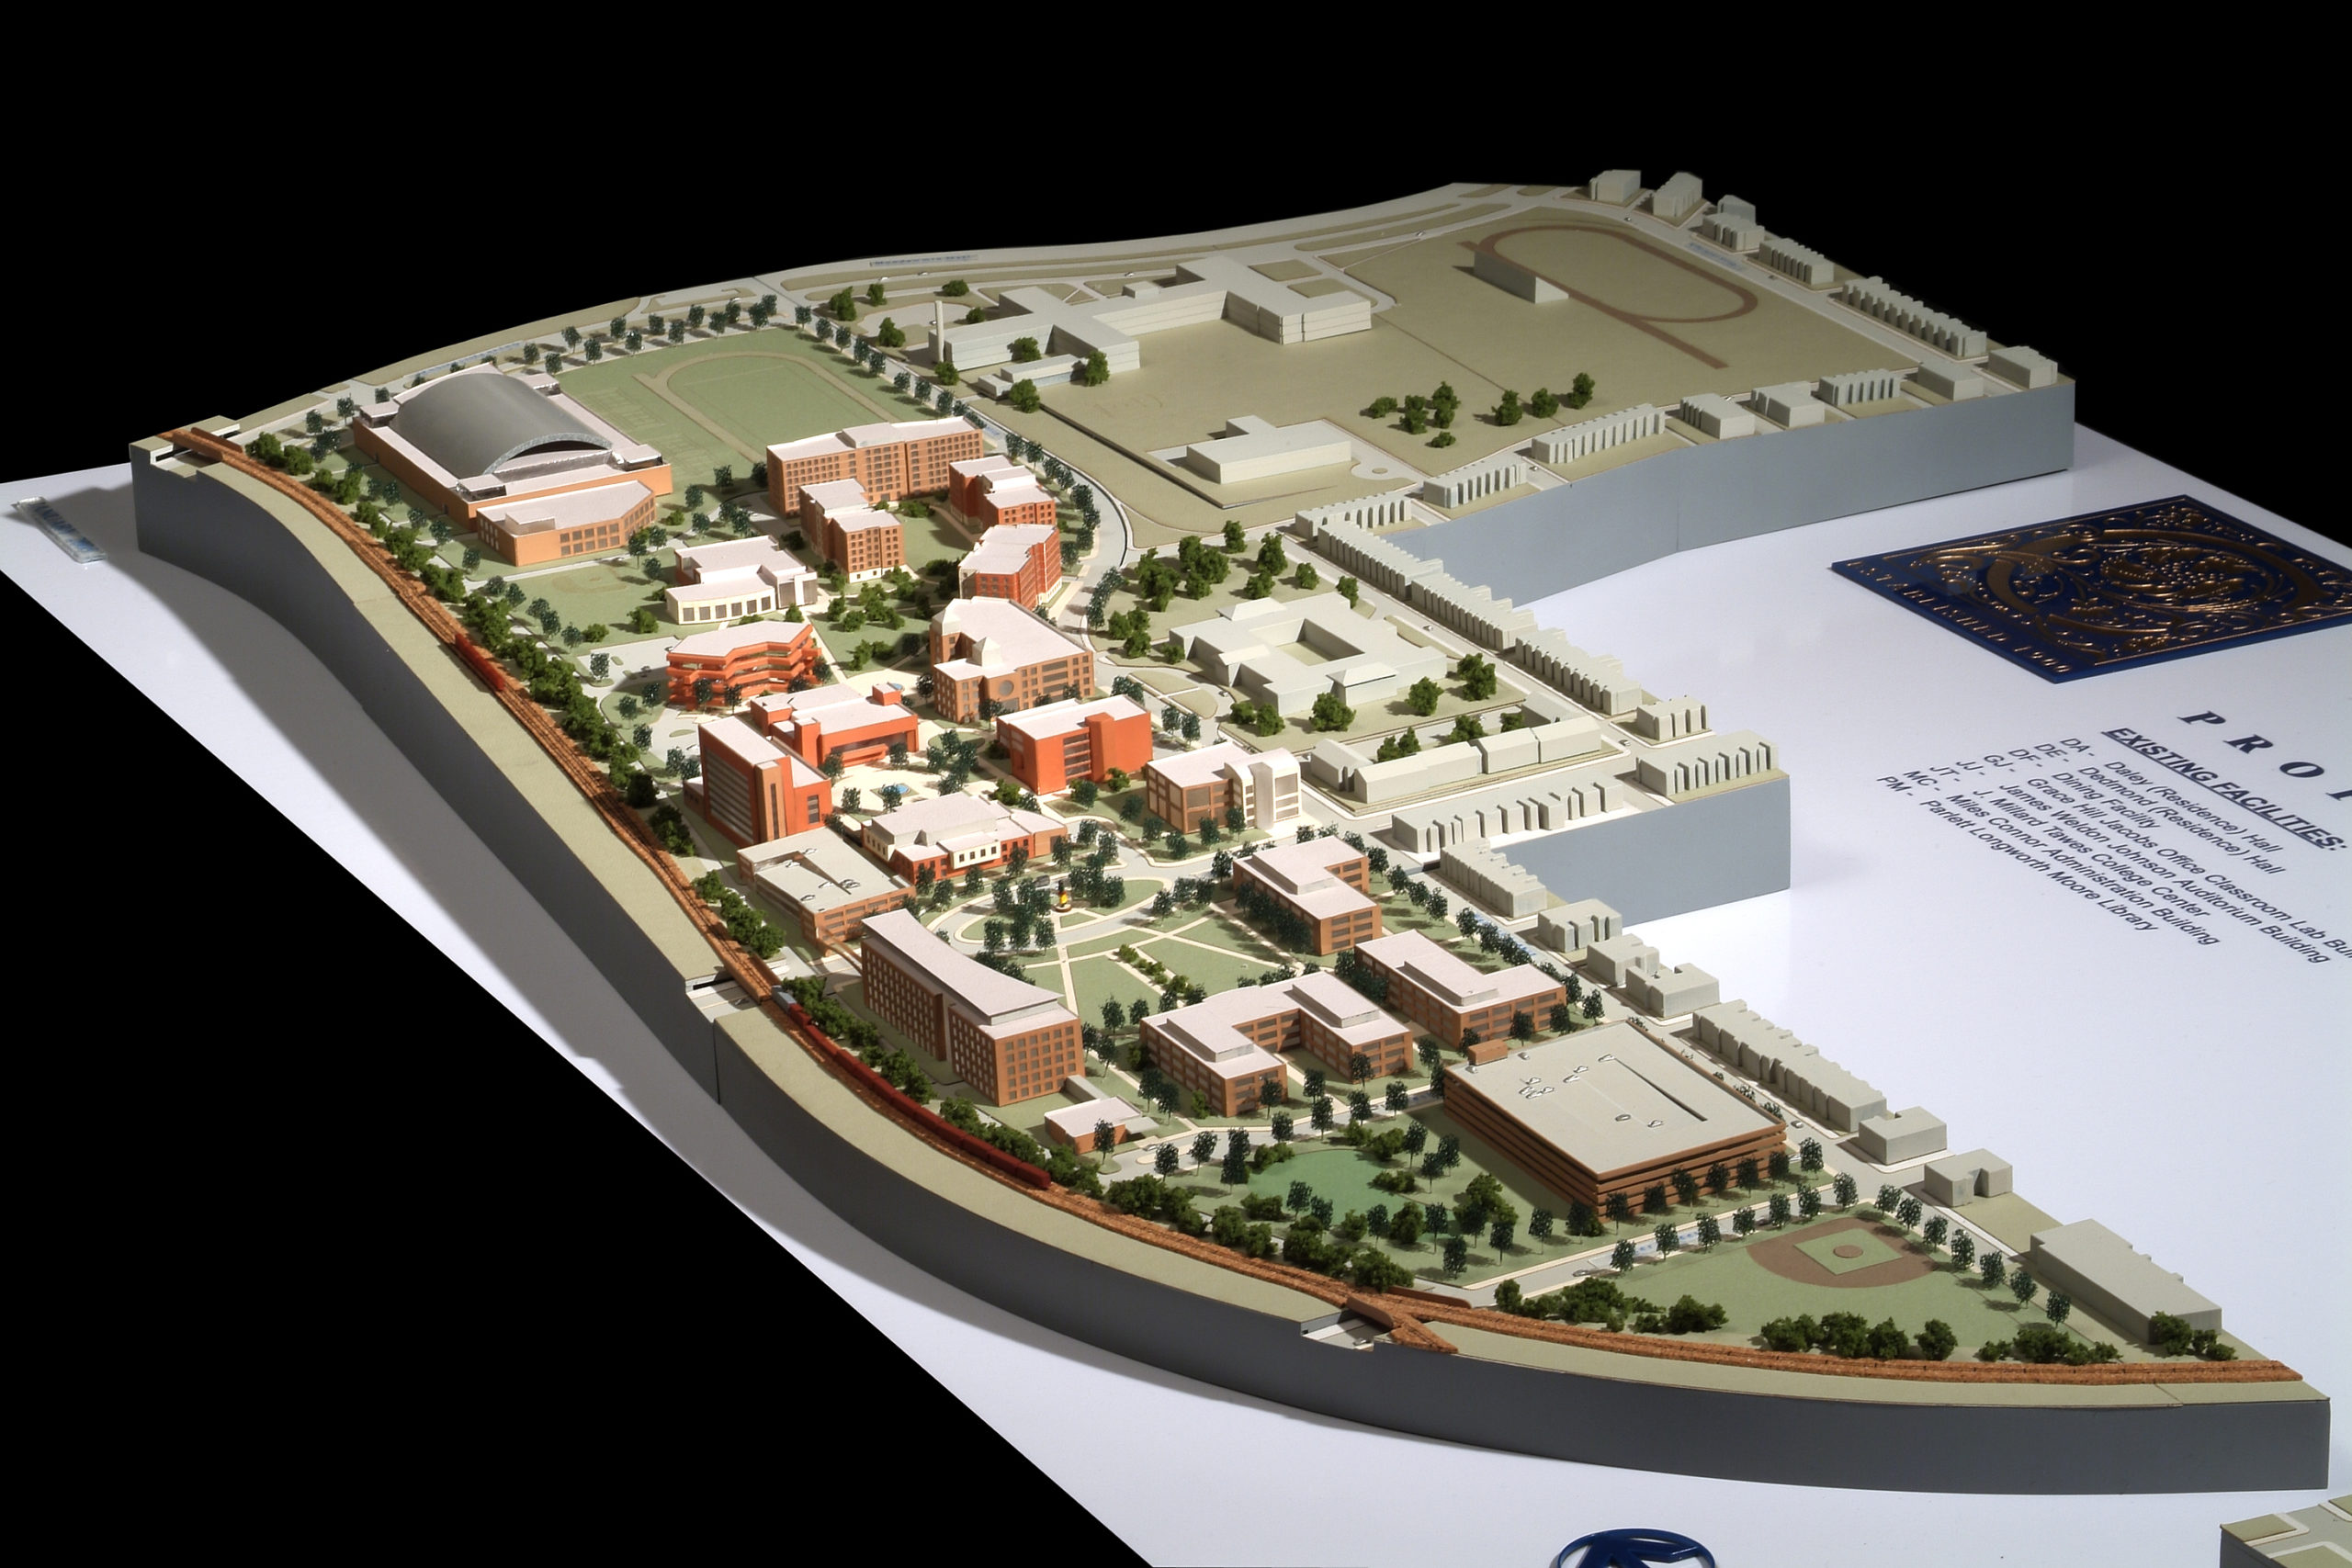 Coppin State University - Master Plan